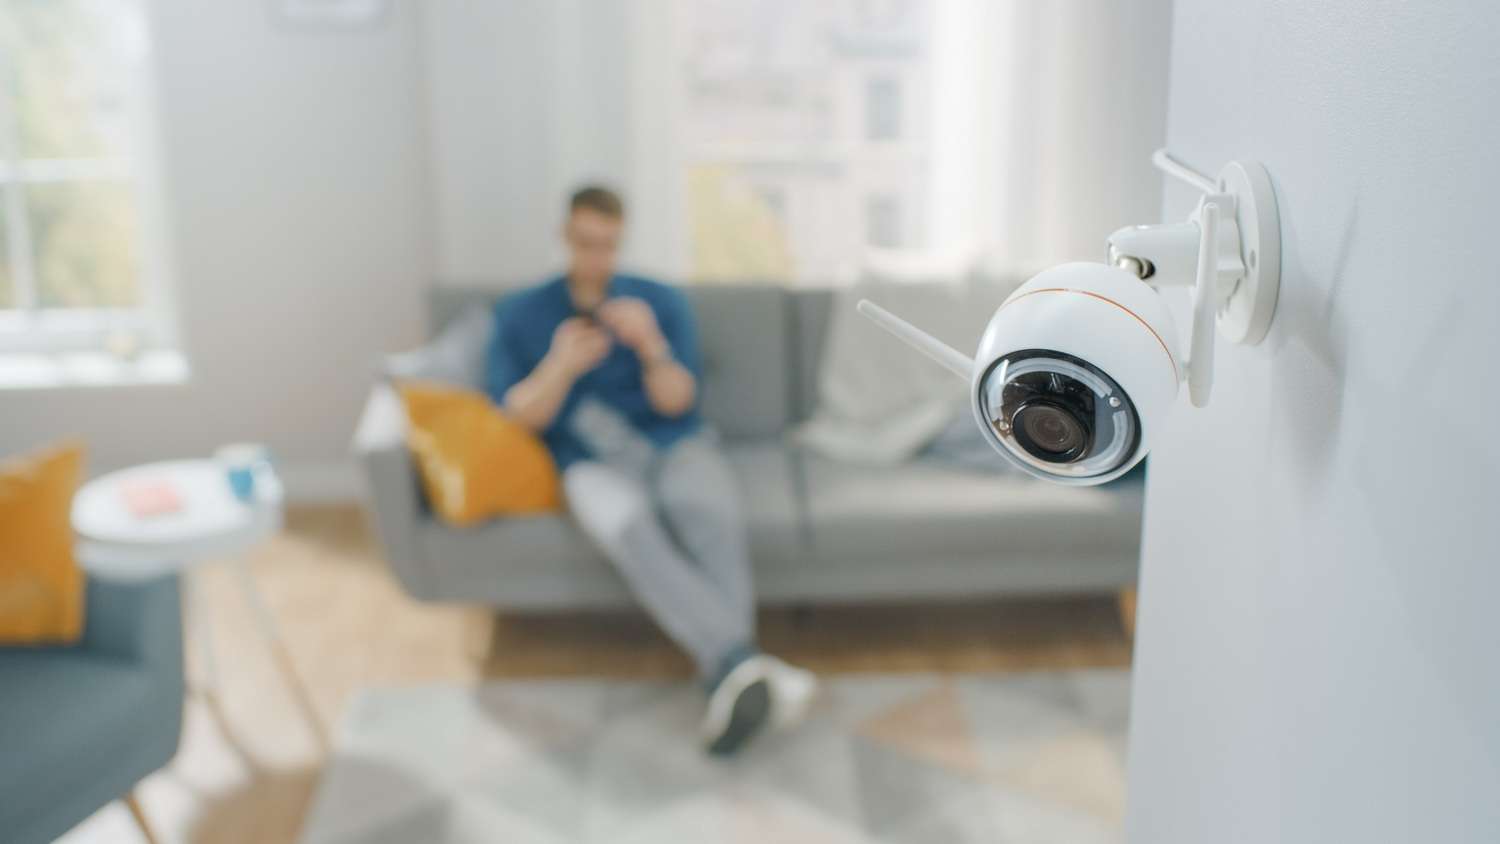 Oppo est le premier constructeur de smartphones à proposer un détecteur de caméras cachées. © Gorodenkoff/Shutterstock©